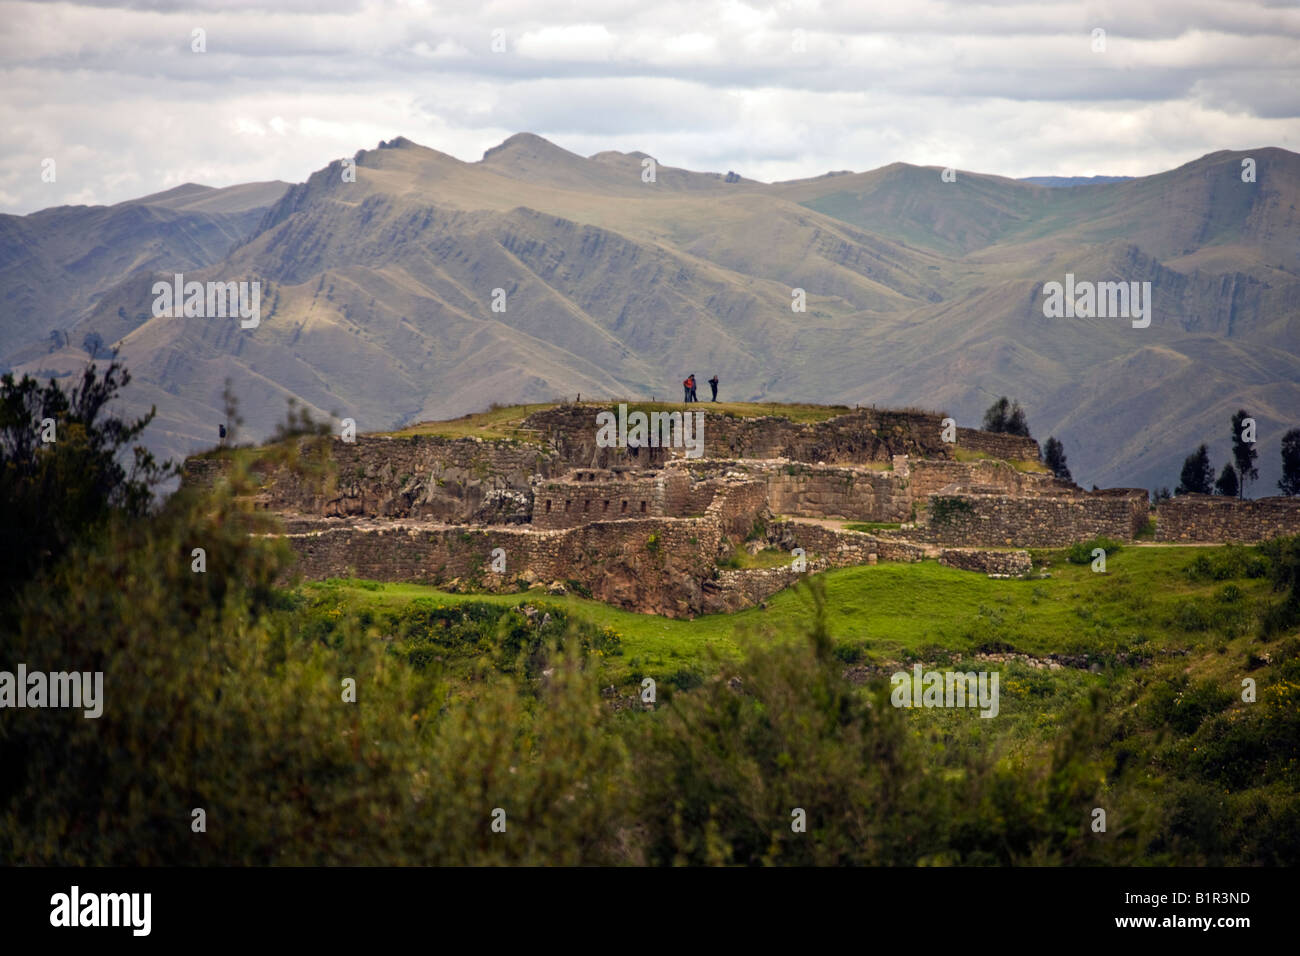 Pucu Pucara Inca Ruins near Cuzco in Peru in South America Stock Photo